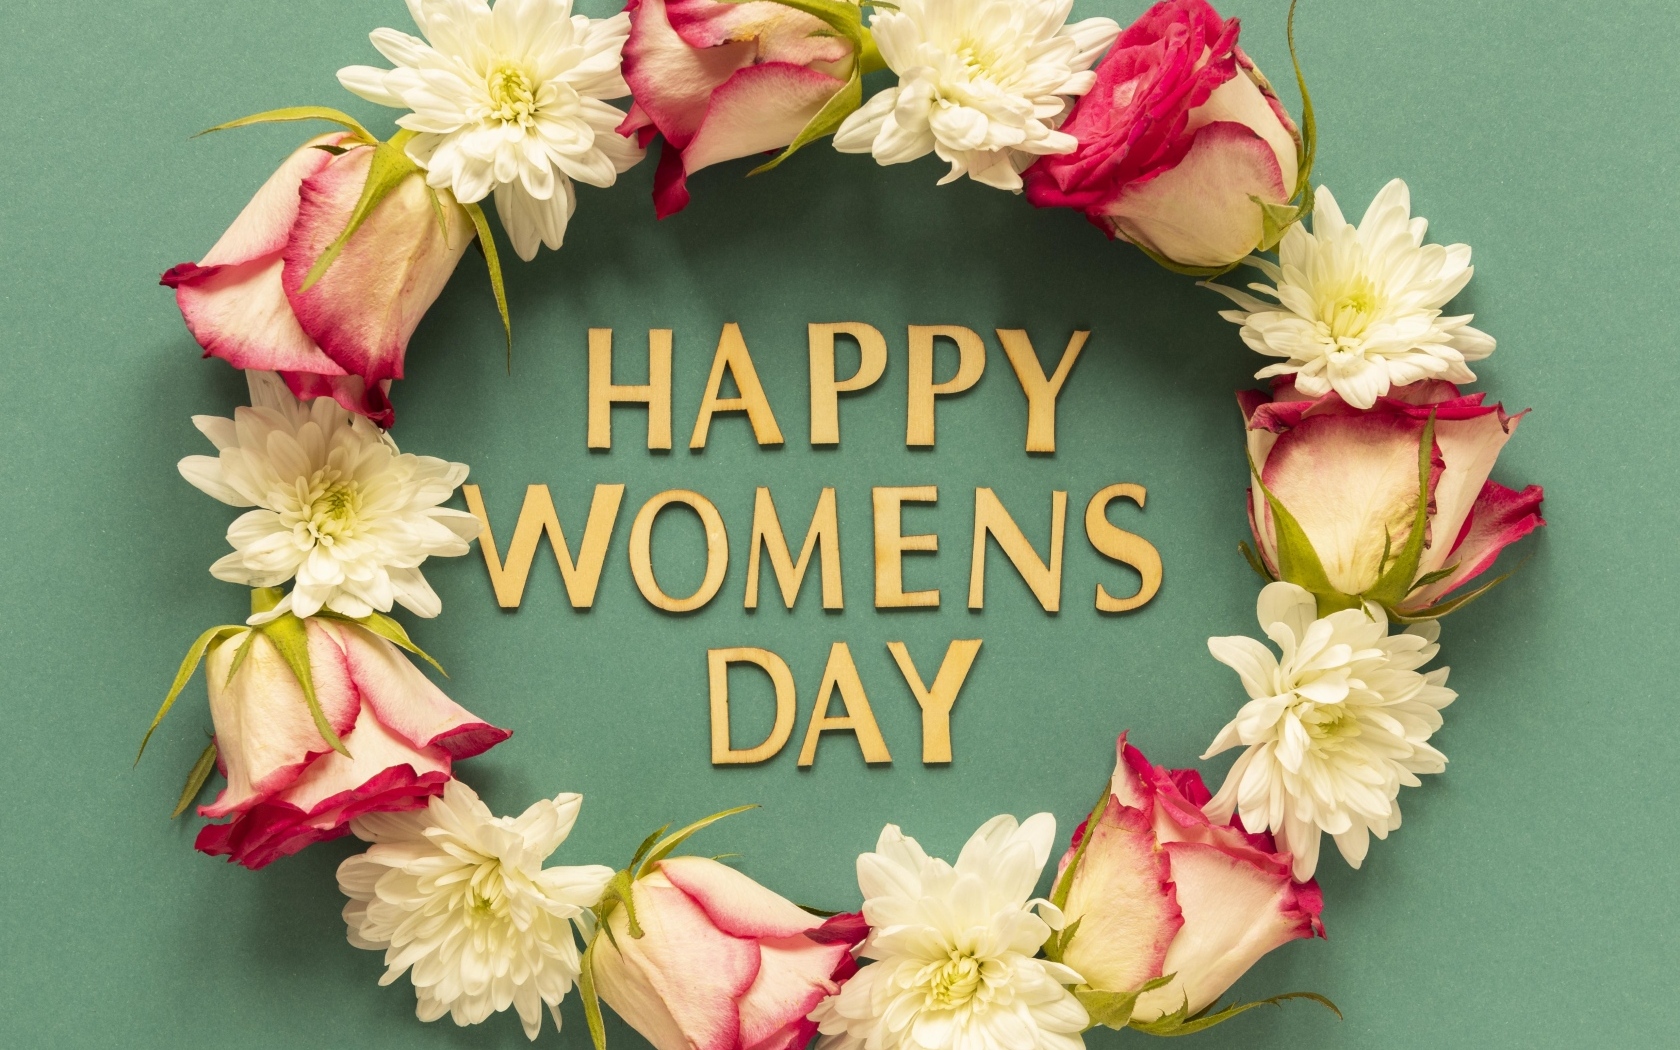 Венок из цветов на международный женский день